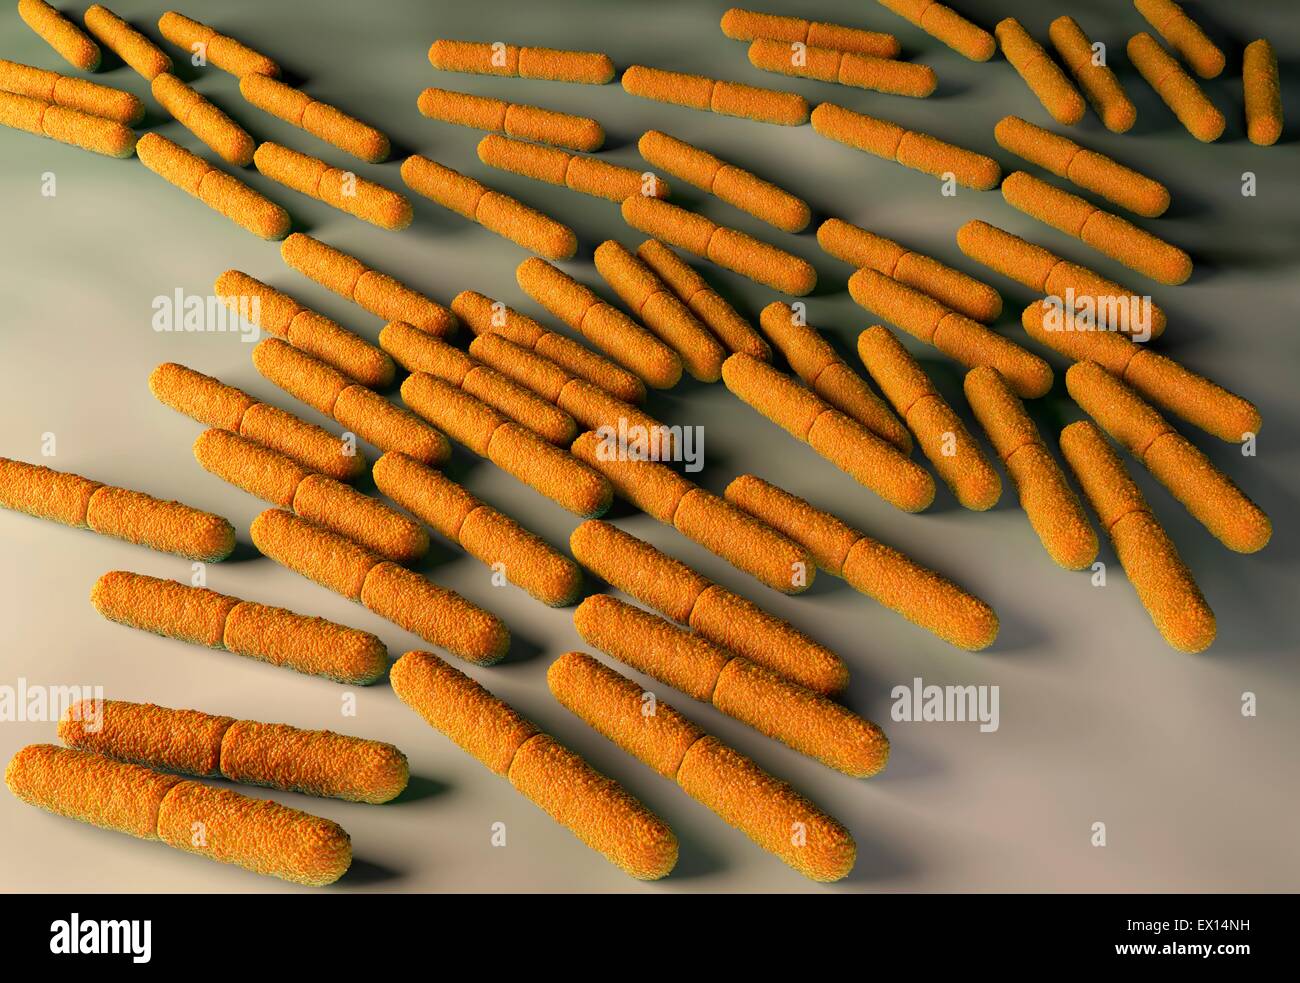 Clostridium botulinum bacteria, illustration. Stock Photo